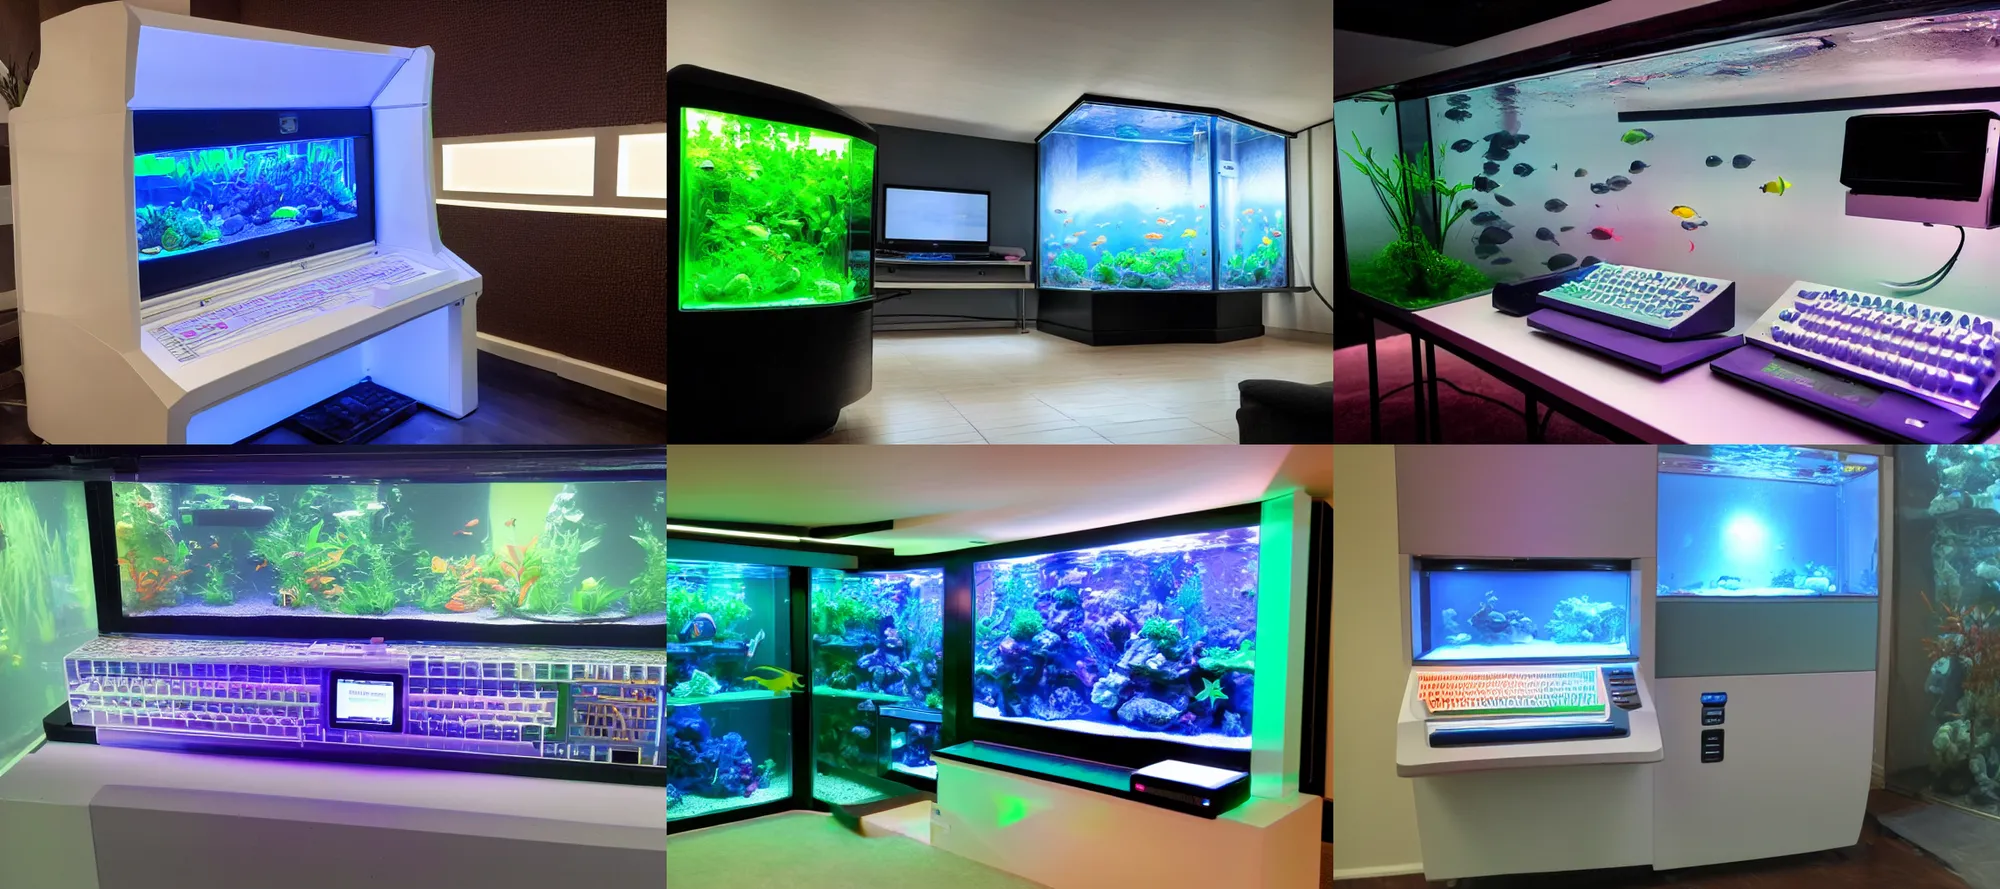 Prompt: Neo y2k digital translucent 90s computer in a dark aquarium room